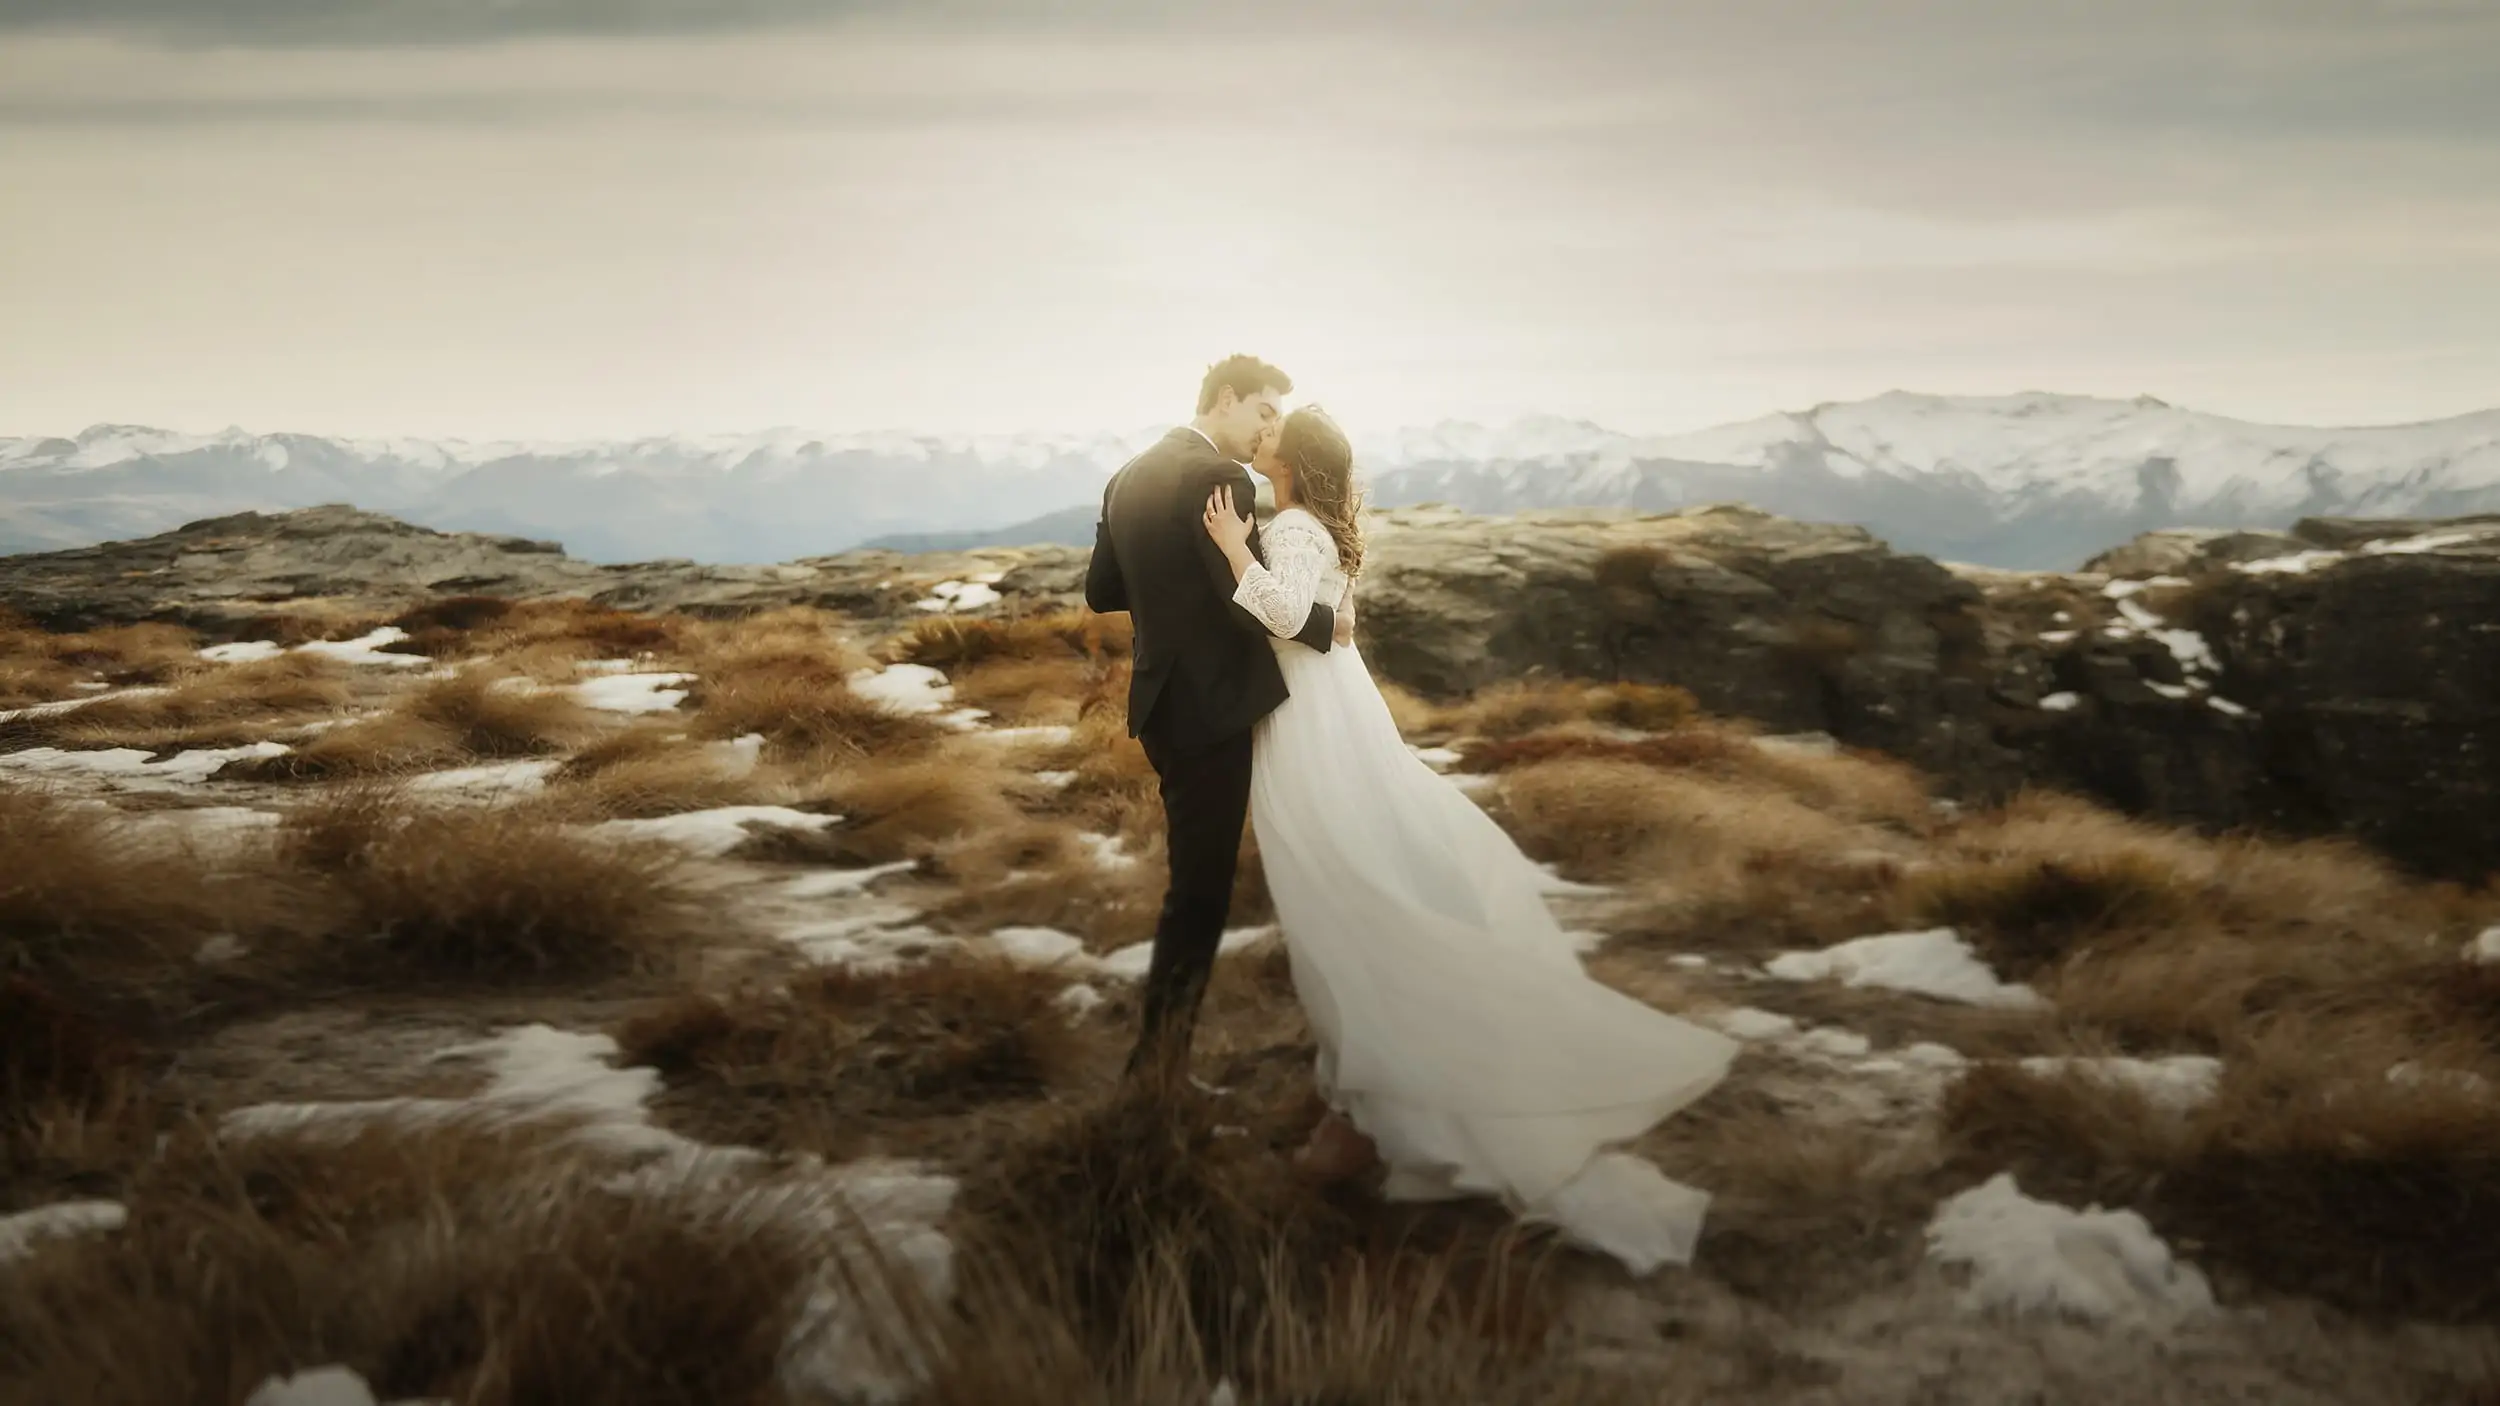 Bruno & Angelica's Queenstown NZ Heli Pre-Wedding Shoot